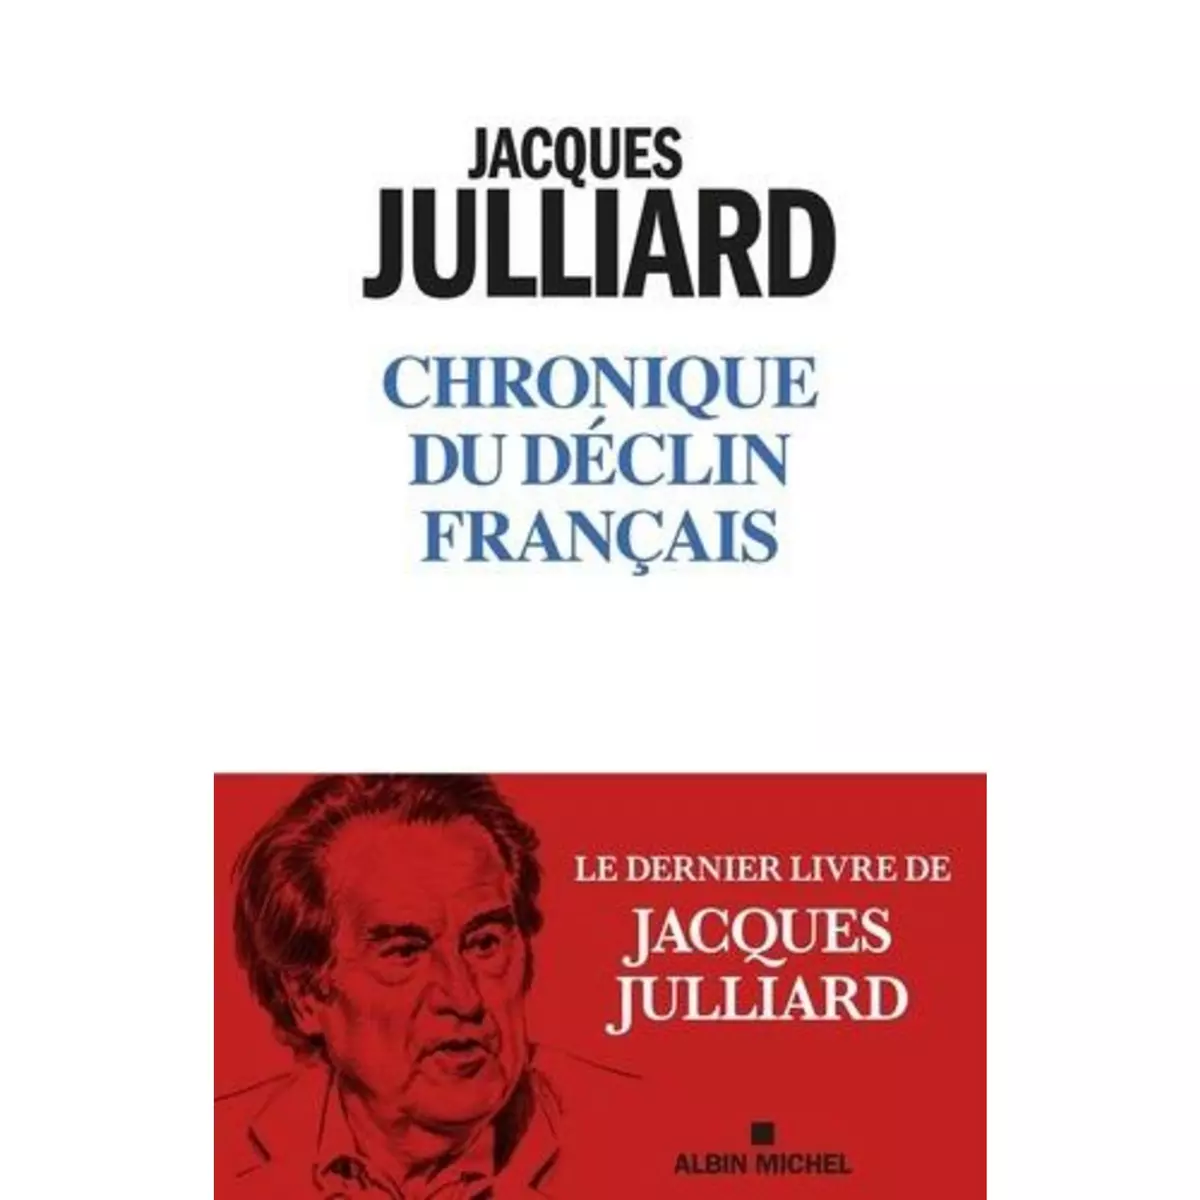  CHRONIQUE DU DECLIN FRANCAIS, Julliard Jacques